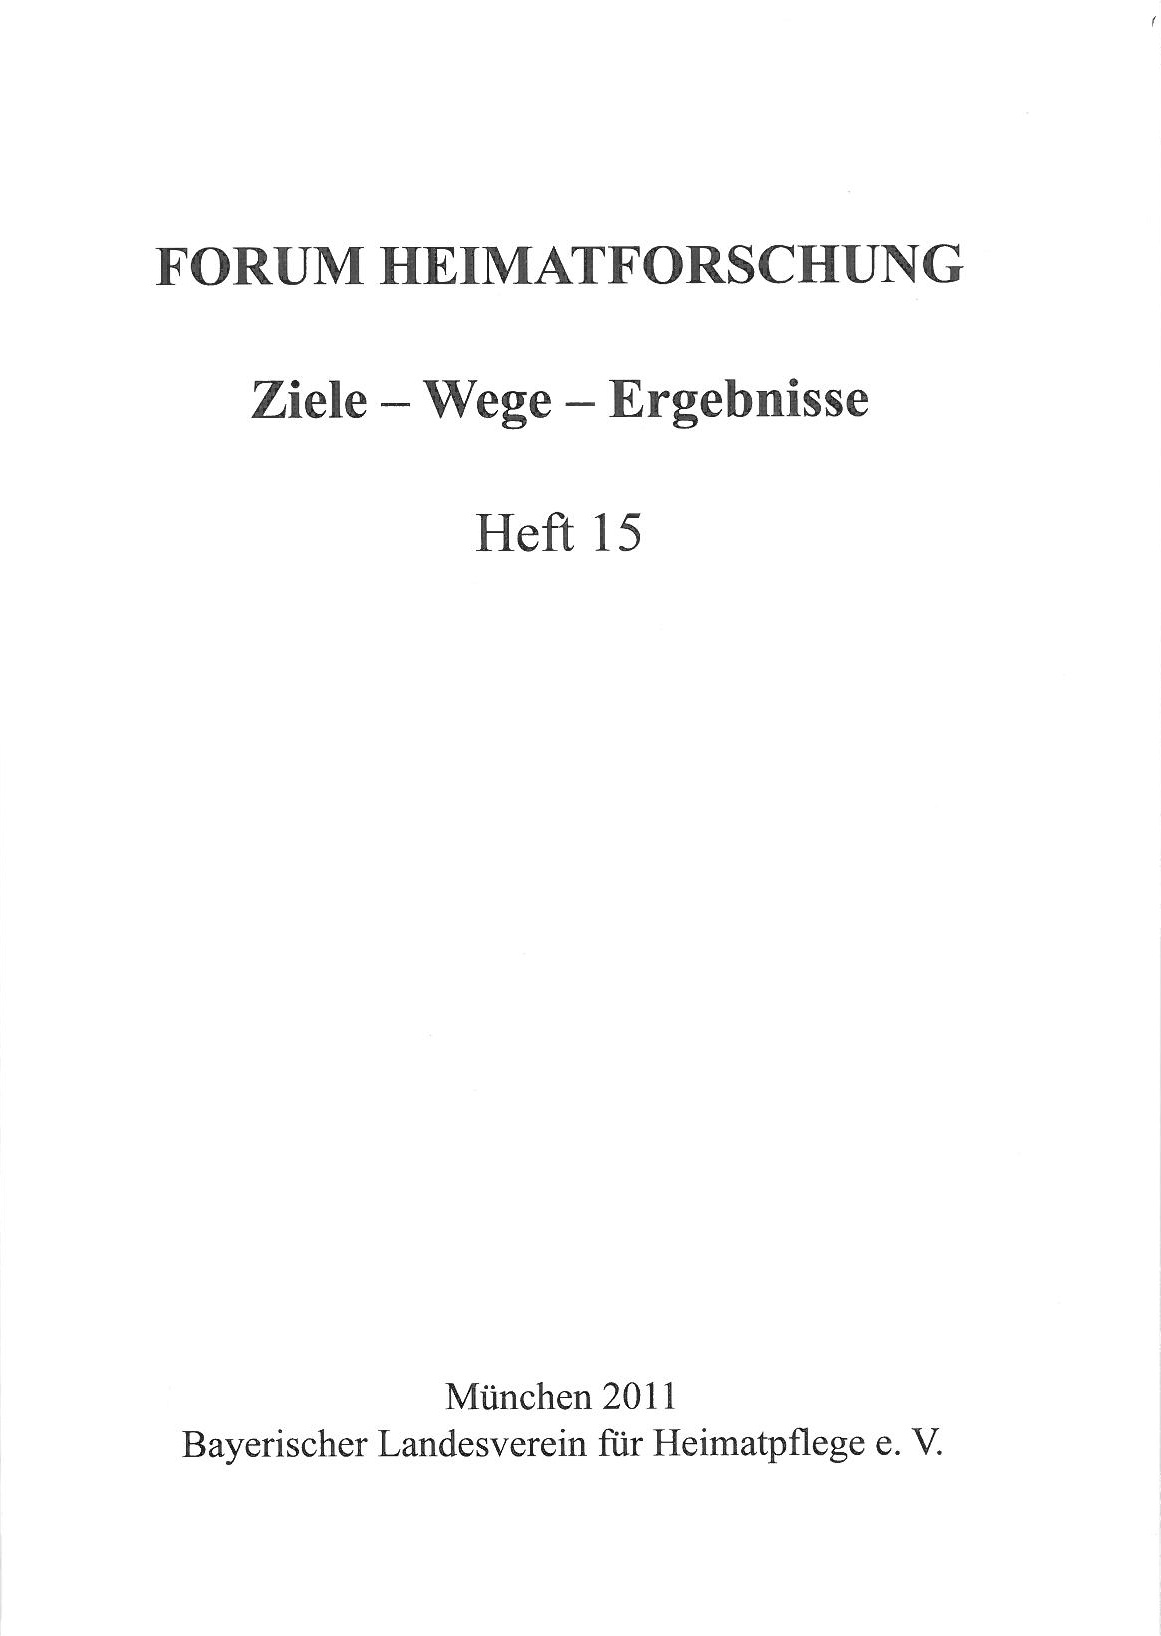 Forum Heimatforschung 15